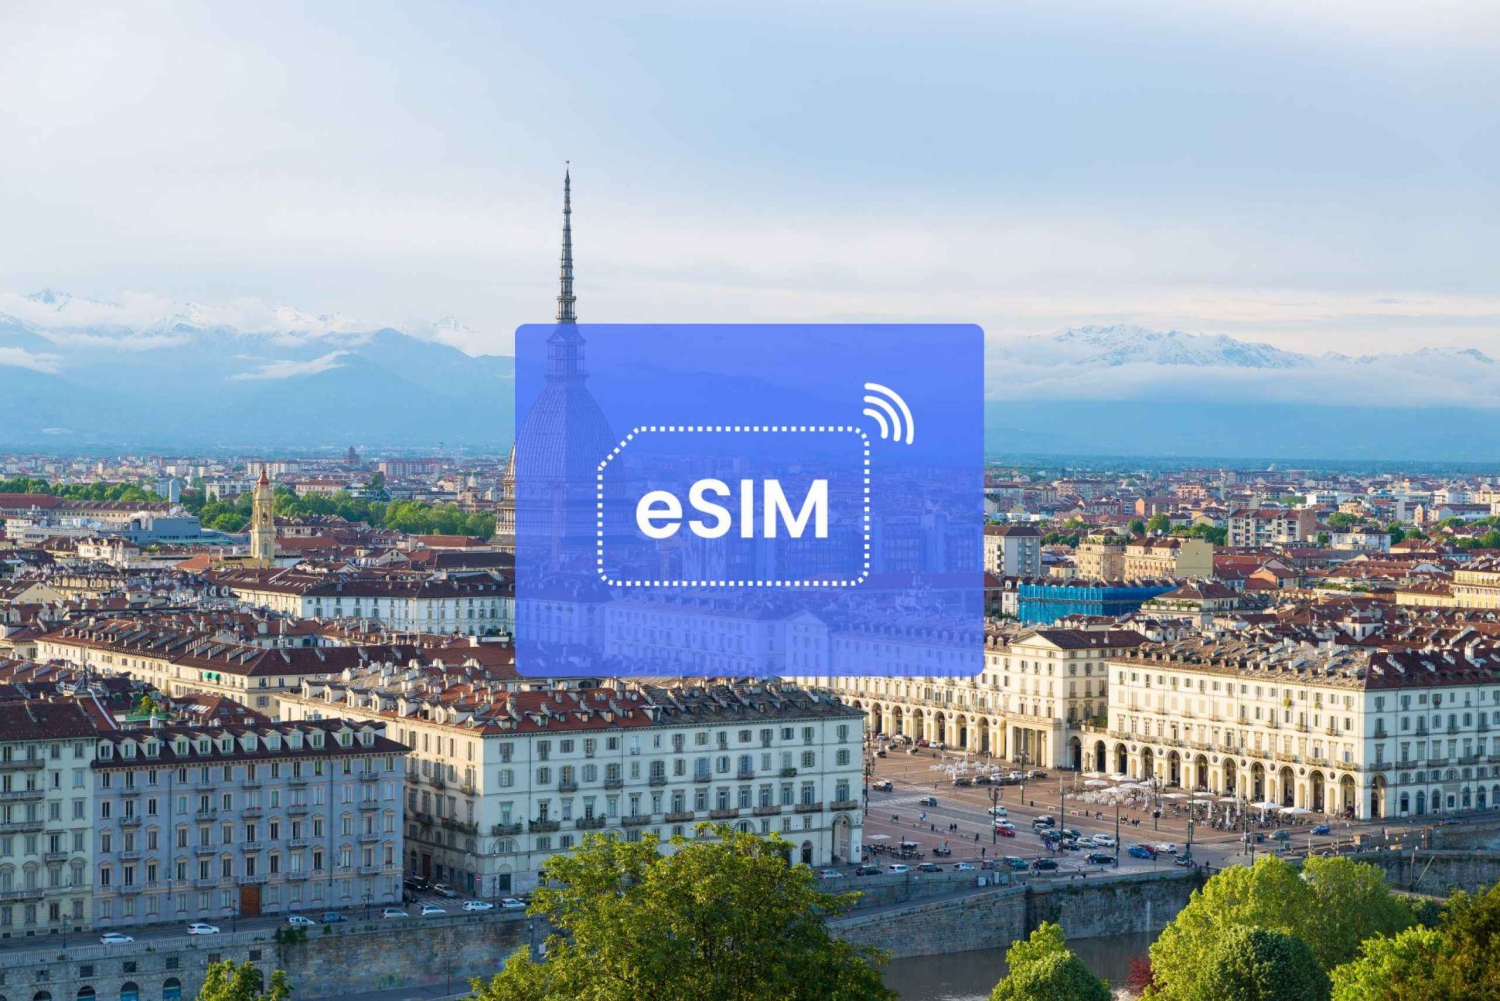 Turin: Italy/ Europe eSIM Roaming Mobile Data Plan